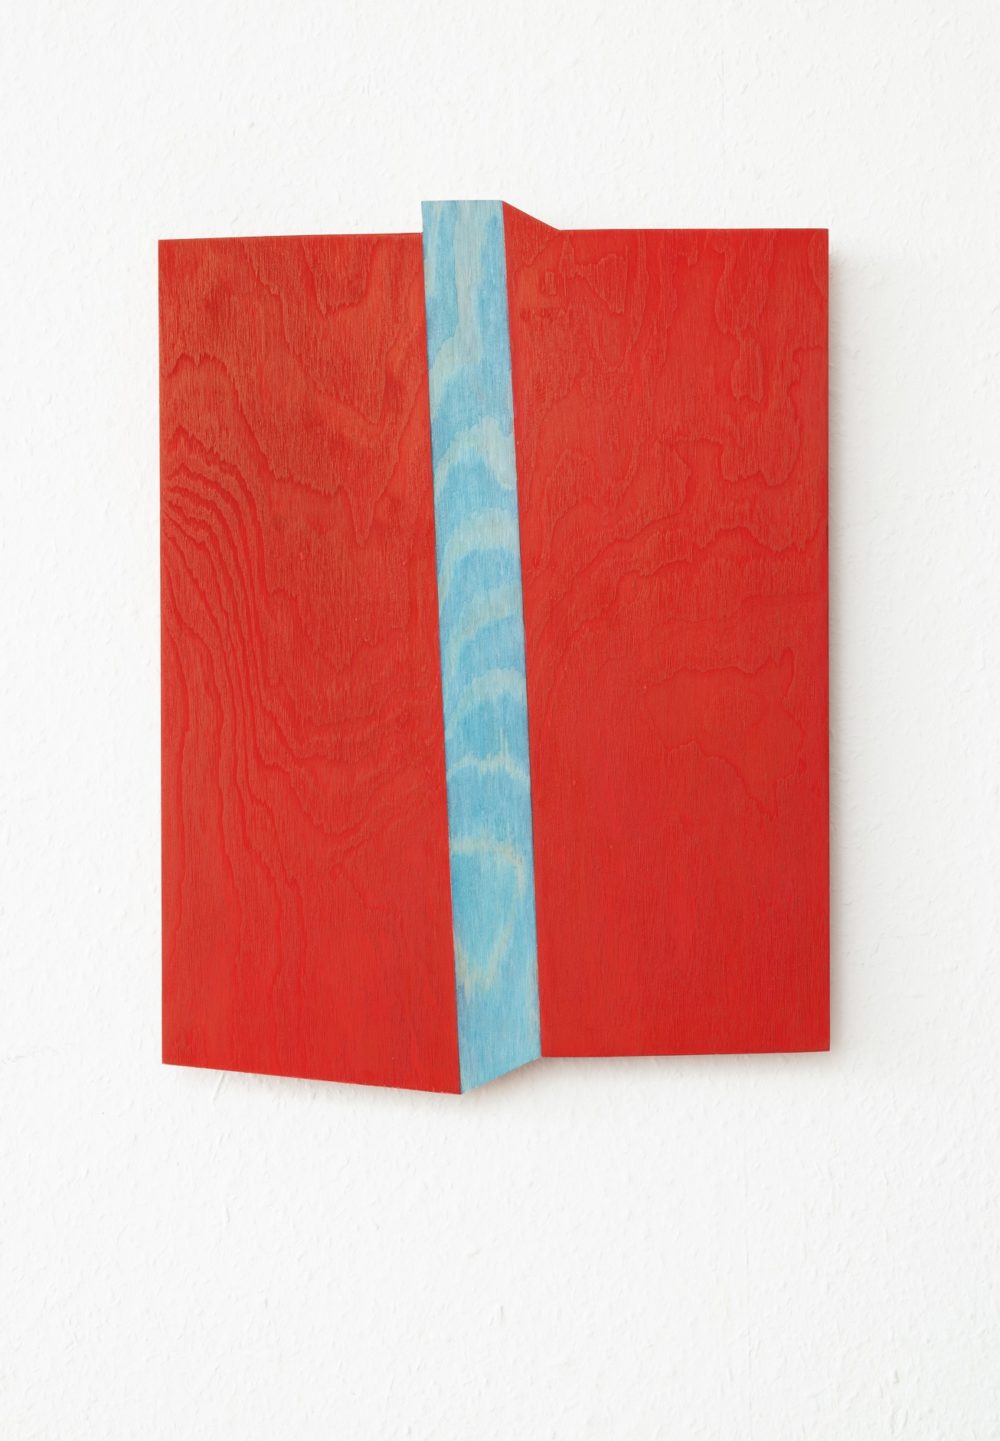 Gegenfeld, 2020, Acryl/Holz, 40 x 30 x 1 cm © VG Bild-Kunst Bonn, 2022/Doris Erbacher, Foto: Dorothea Burkhardt